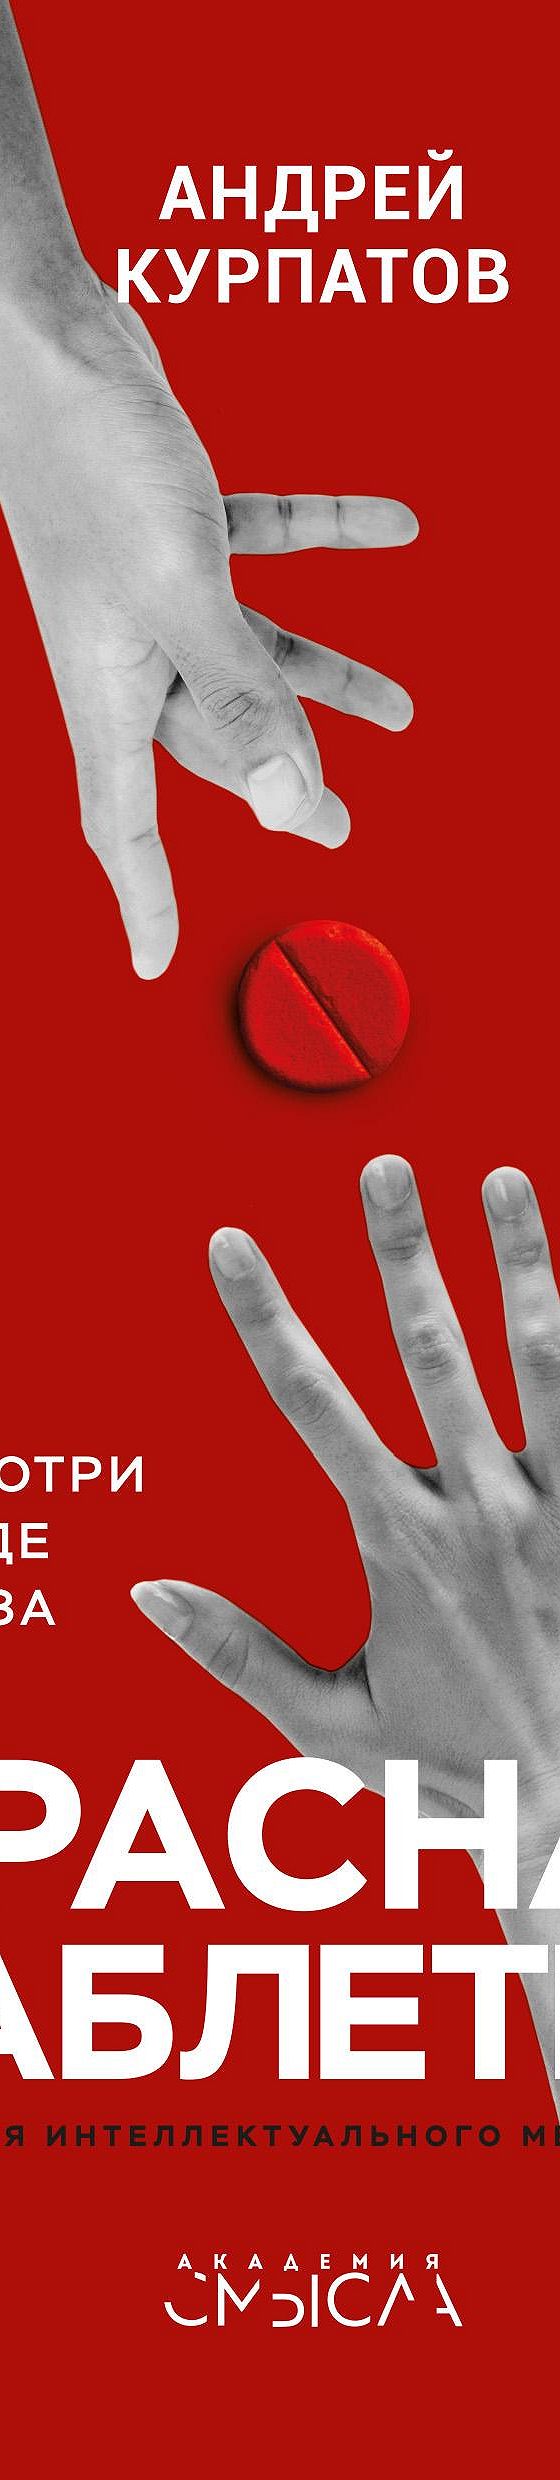 Читать книгу «Красная таблетка. Посмотри правде в глаза!» онлайн полностью📖 — Андрея Курпатова — MyBook.